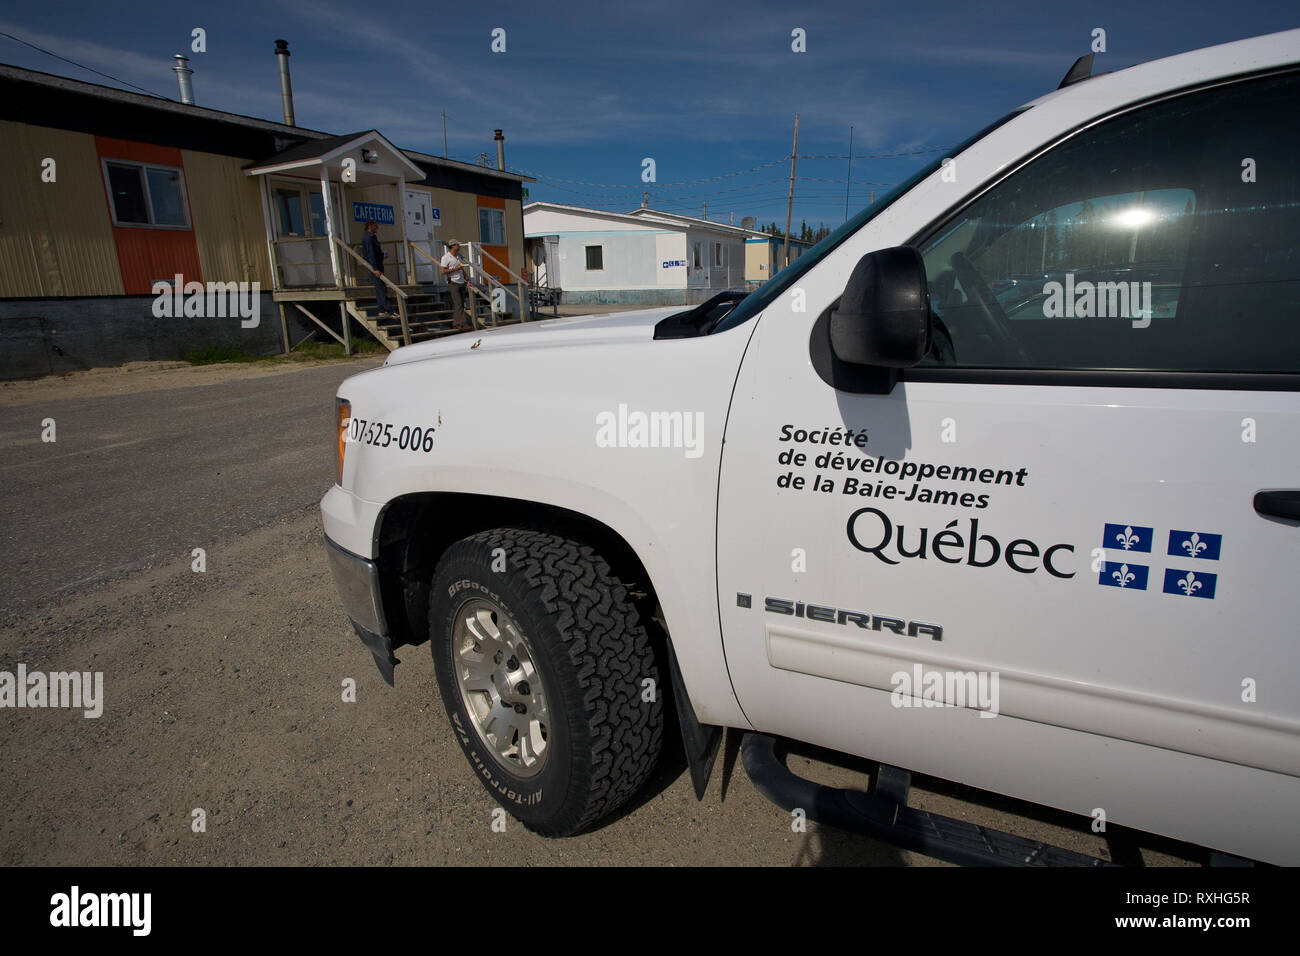 Relais Routier, Eeyou Istchee James Bay Territory, Quebec, Canada Stock Photo